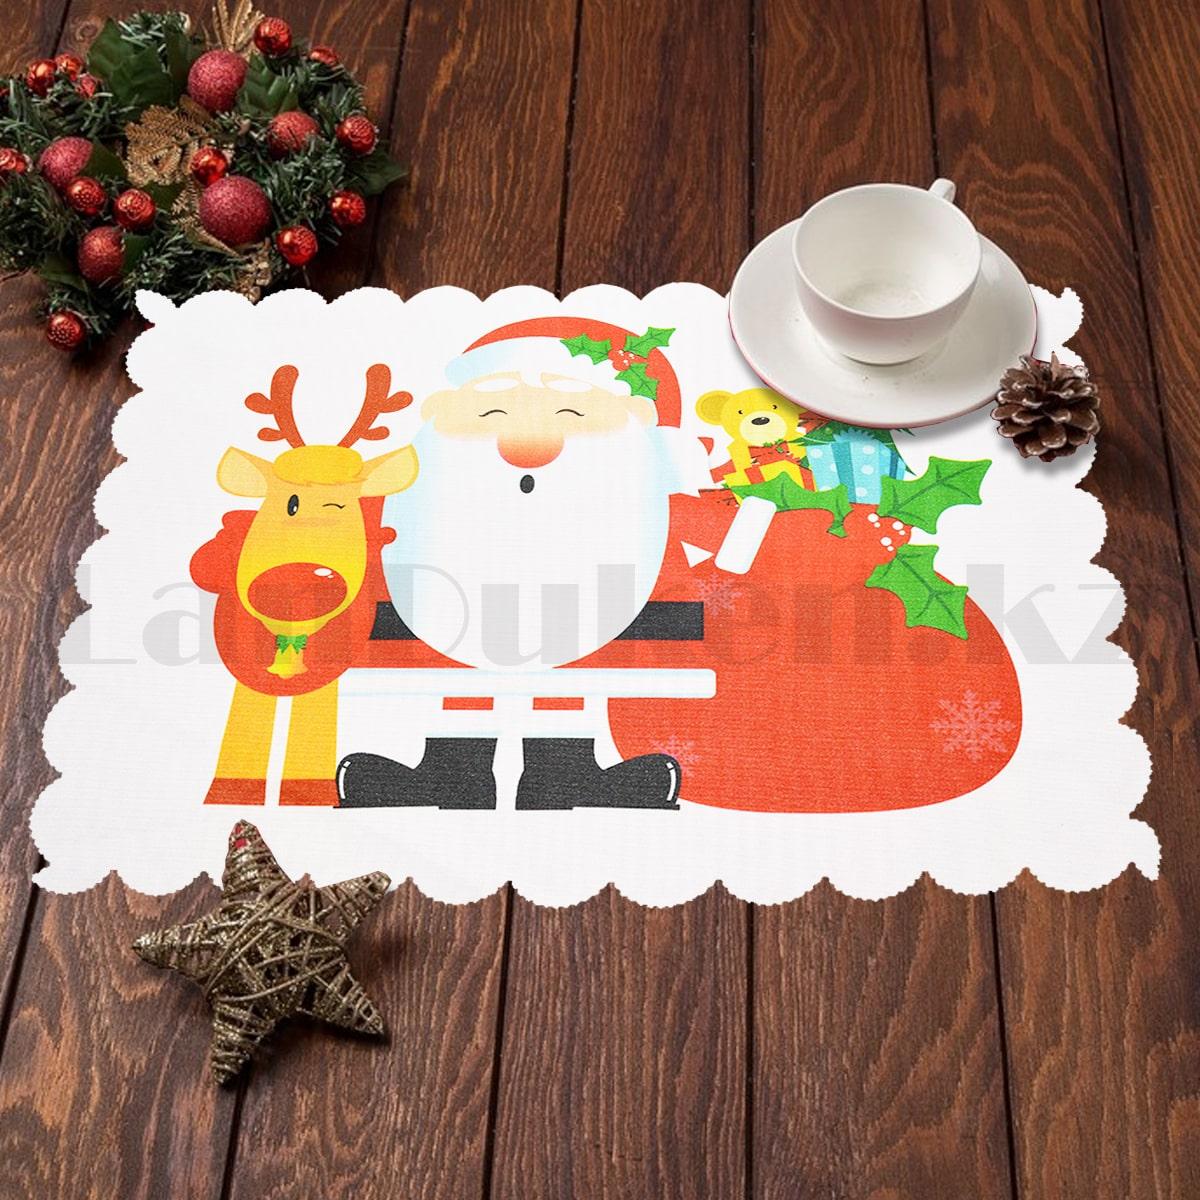 Салфетка сервировочная новогодняя Санта с подарками 46x33 см